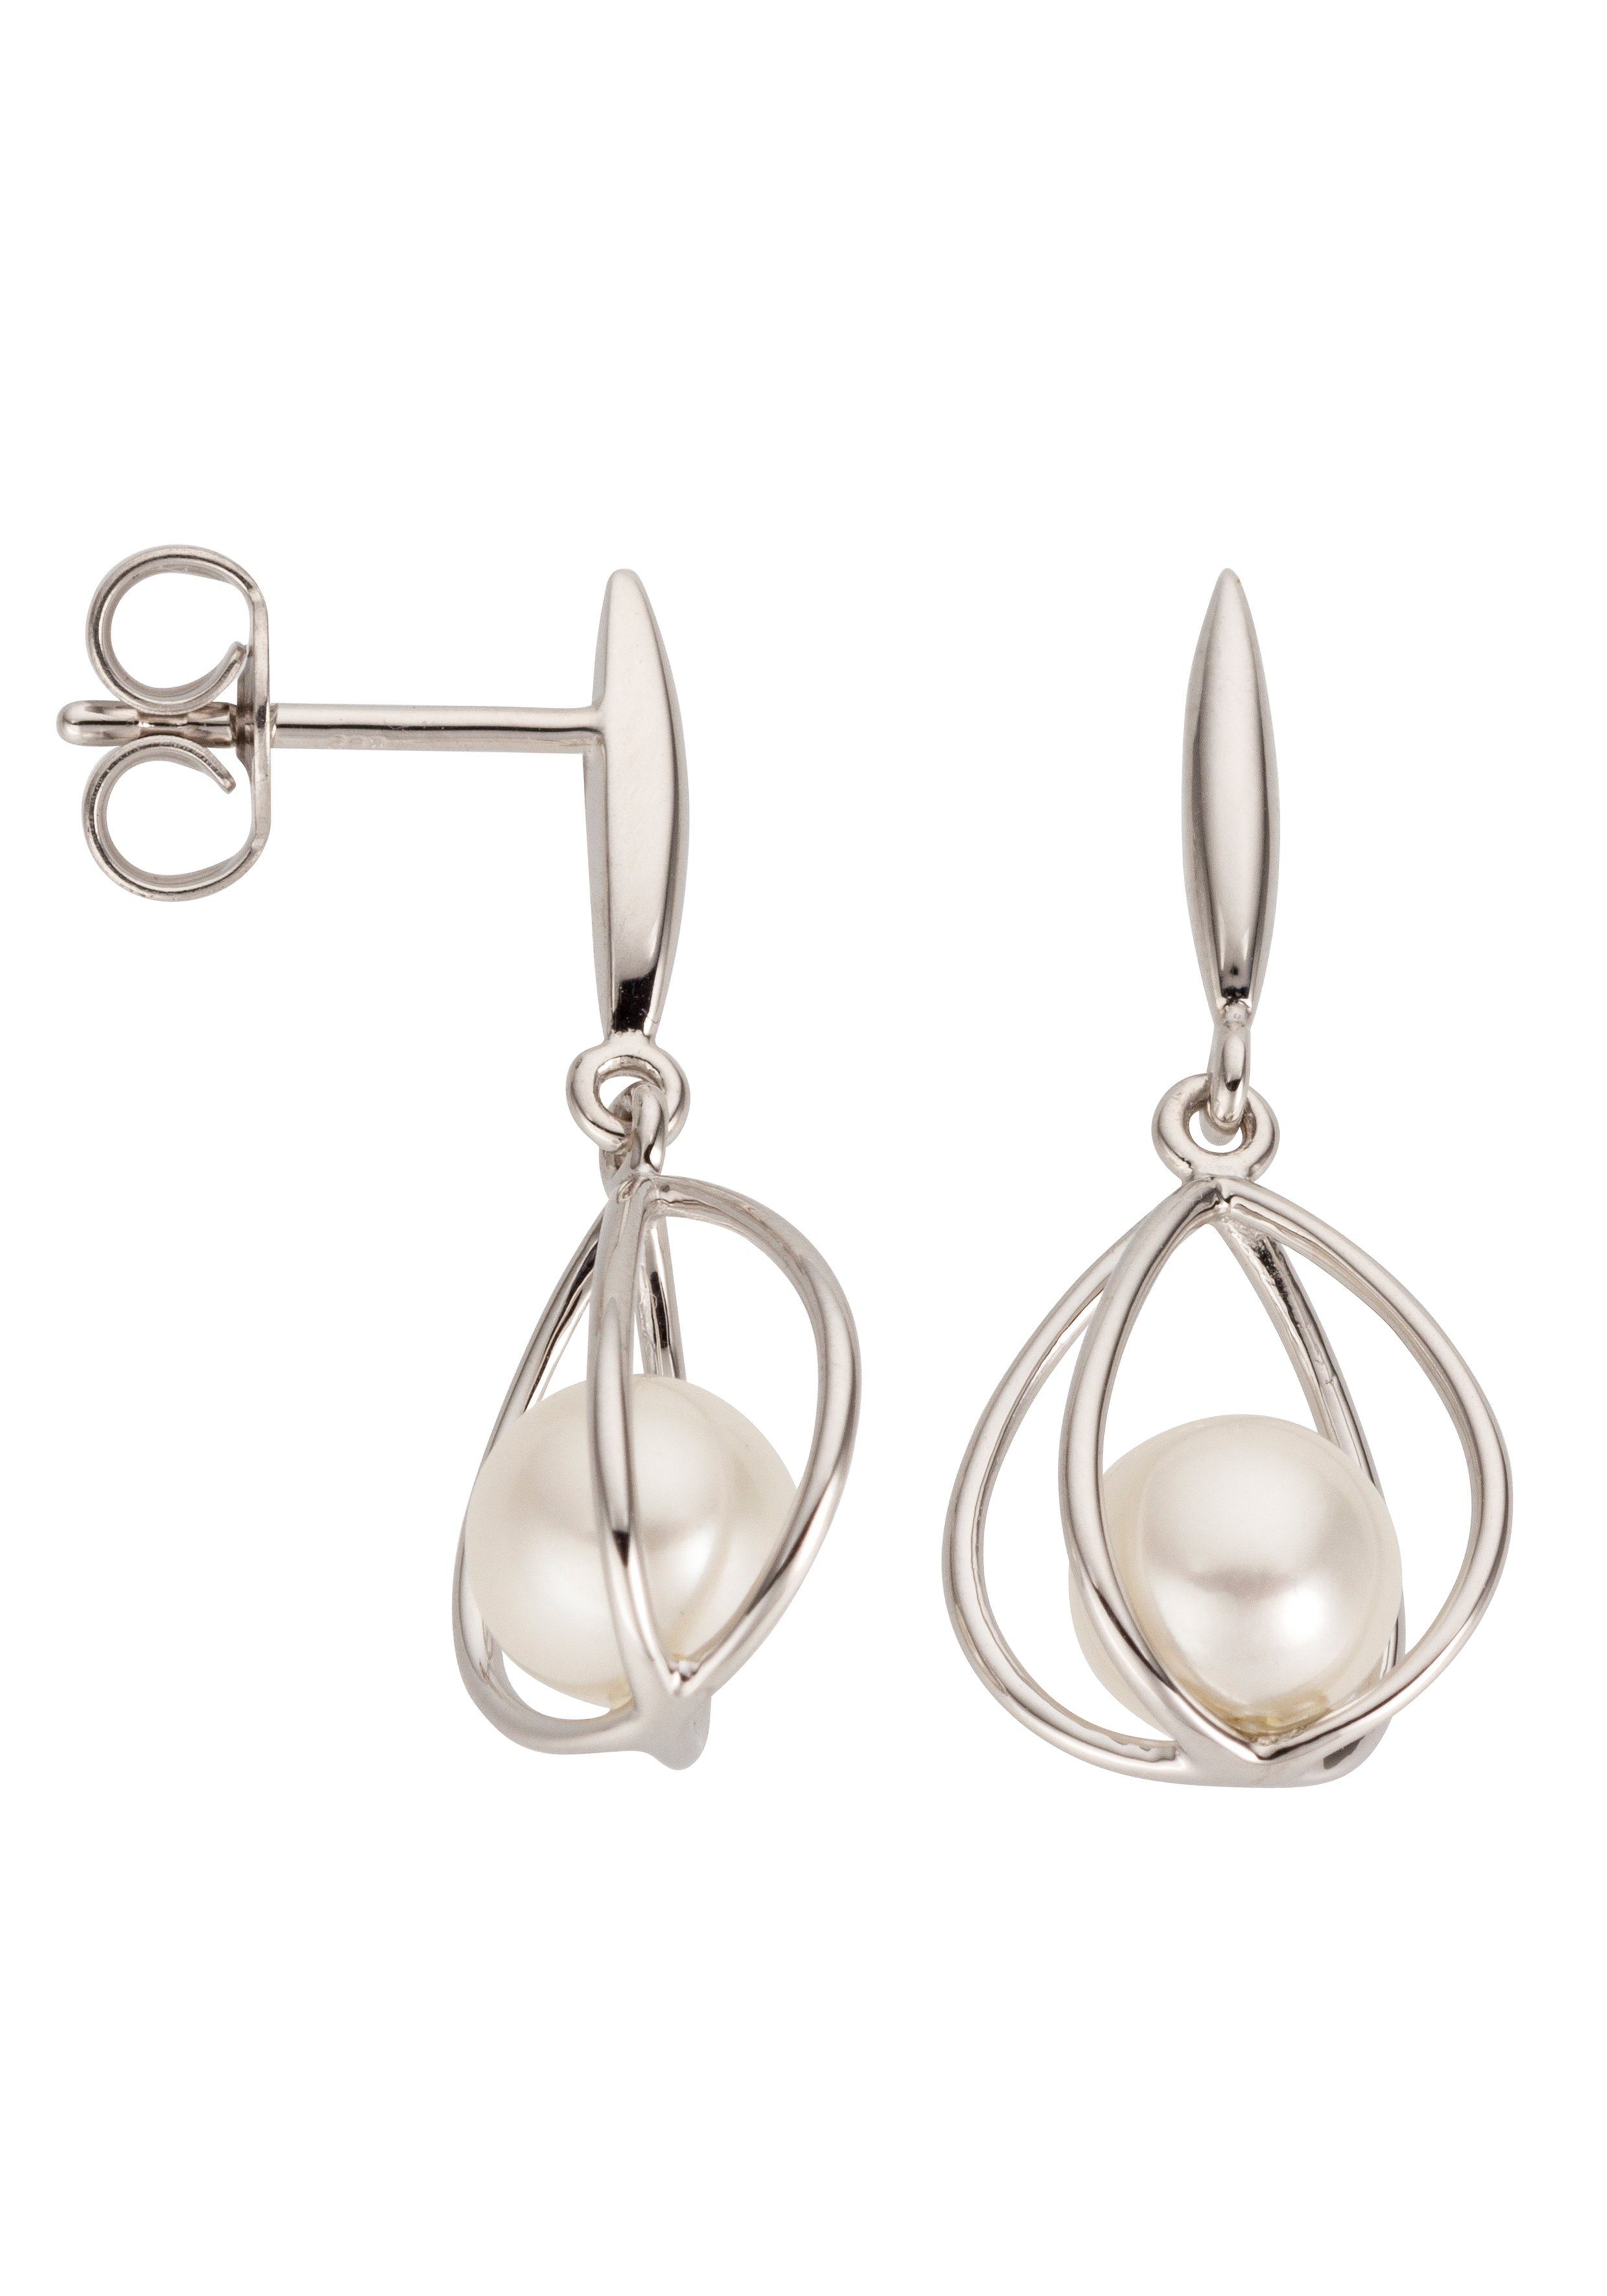 Damen Schmuck JOBO Perlenohrringe Ohrringe mit Perlen, 585 Weißgold